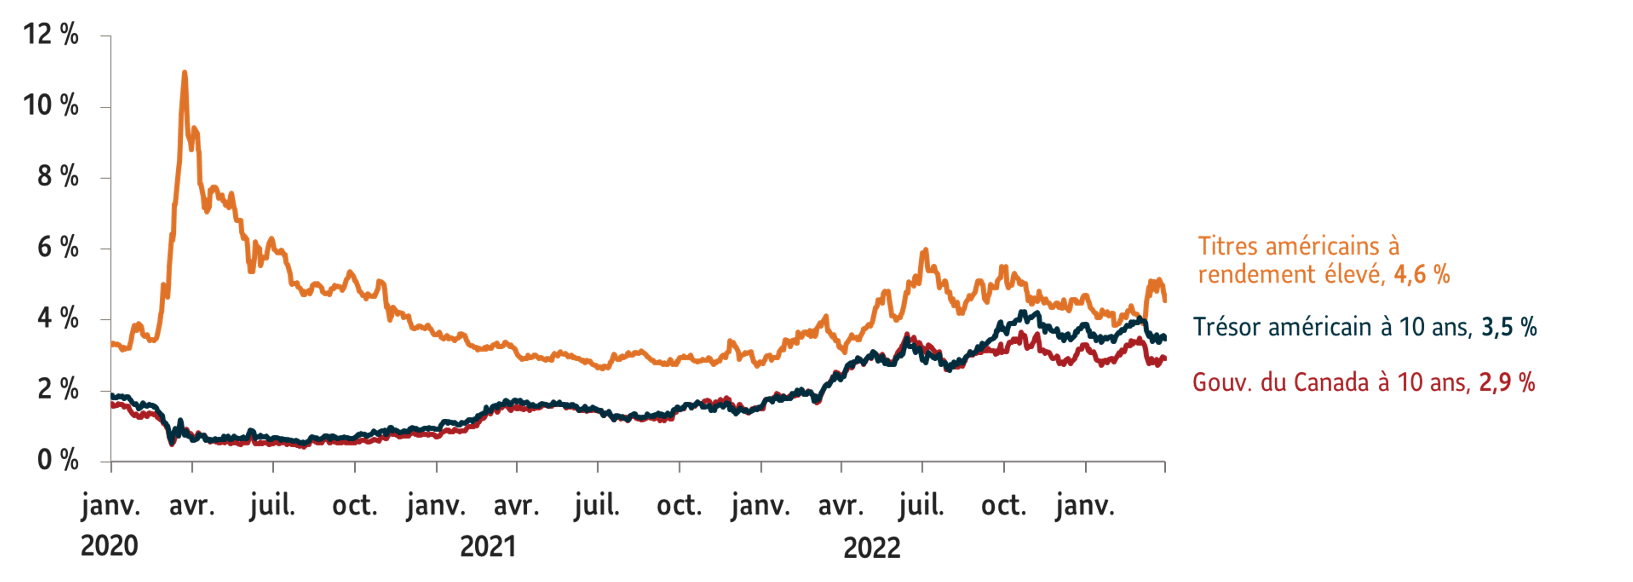 Le graphque montre la courbe de rendement des obligations de 10 ans a terminé 2022 en hausse aux États-Unis et au Canada